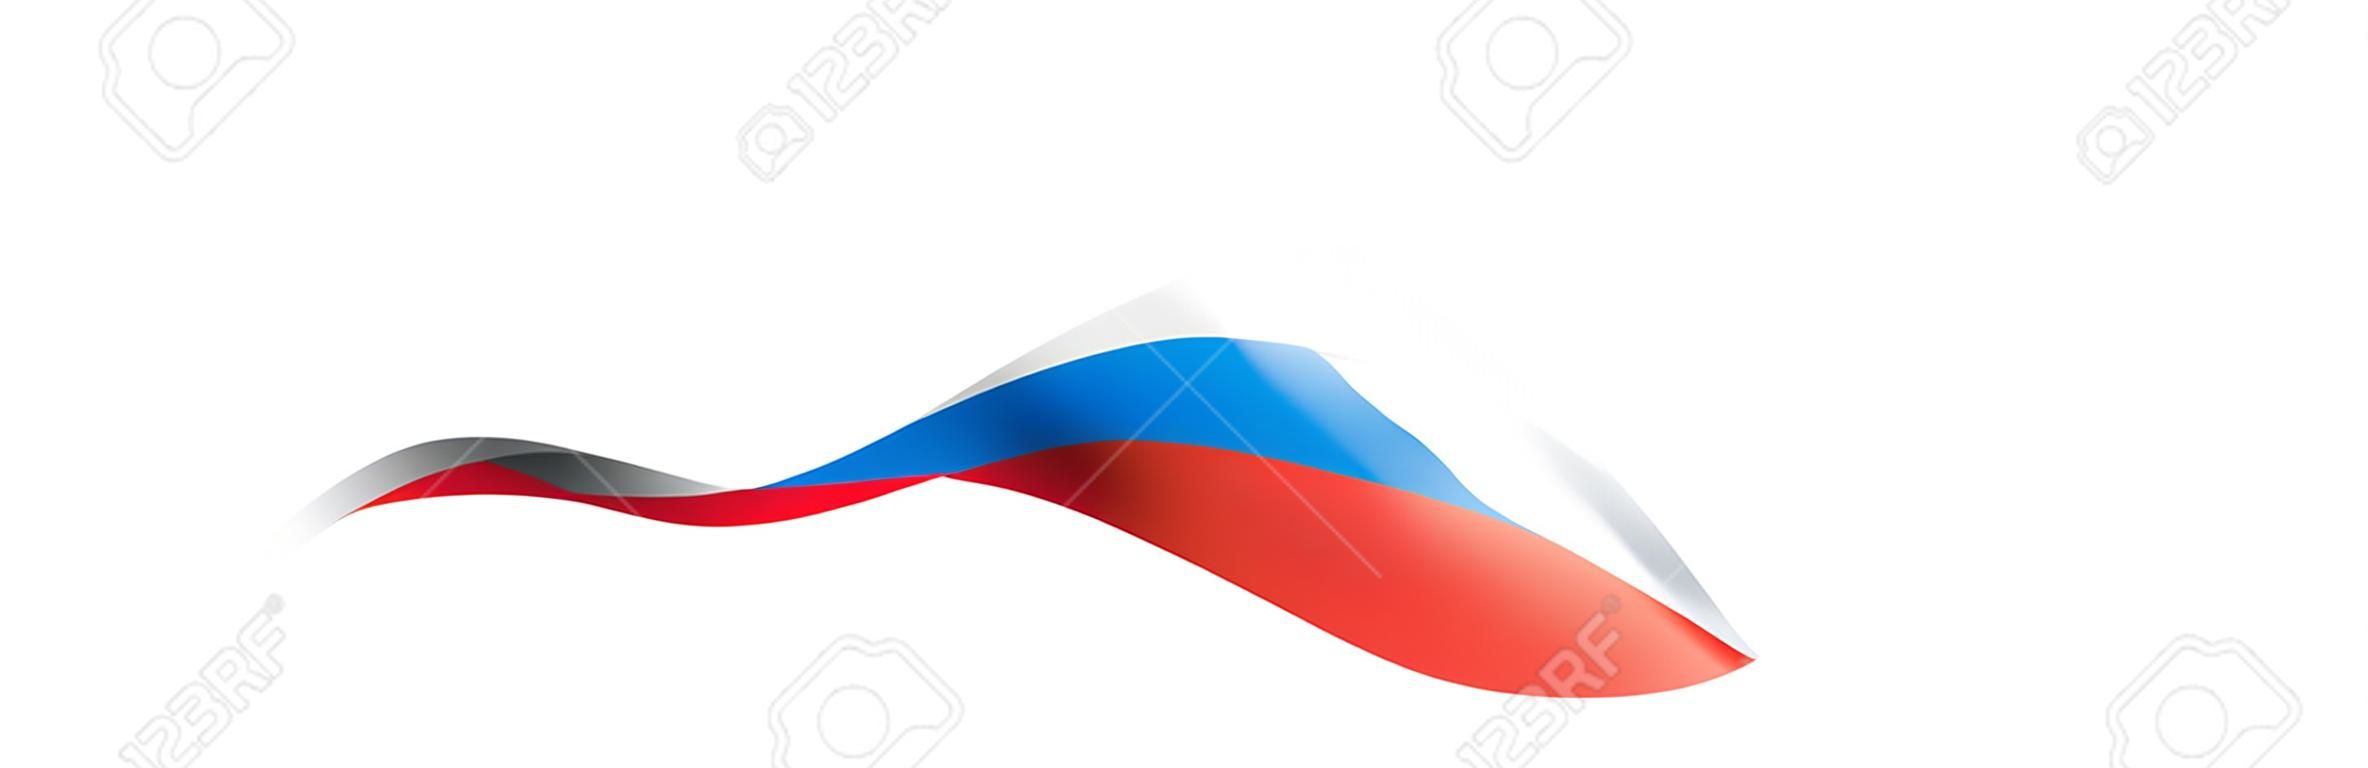 Drapeau de la Russie, illustration vectorielle sur fond blanc.